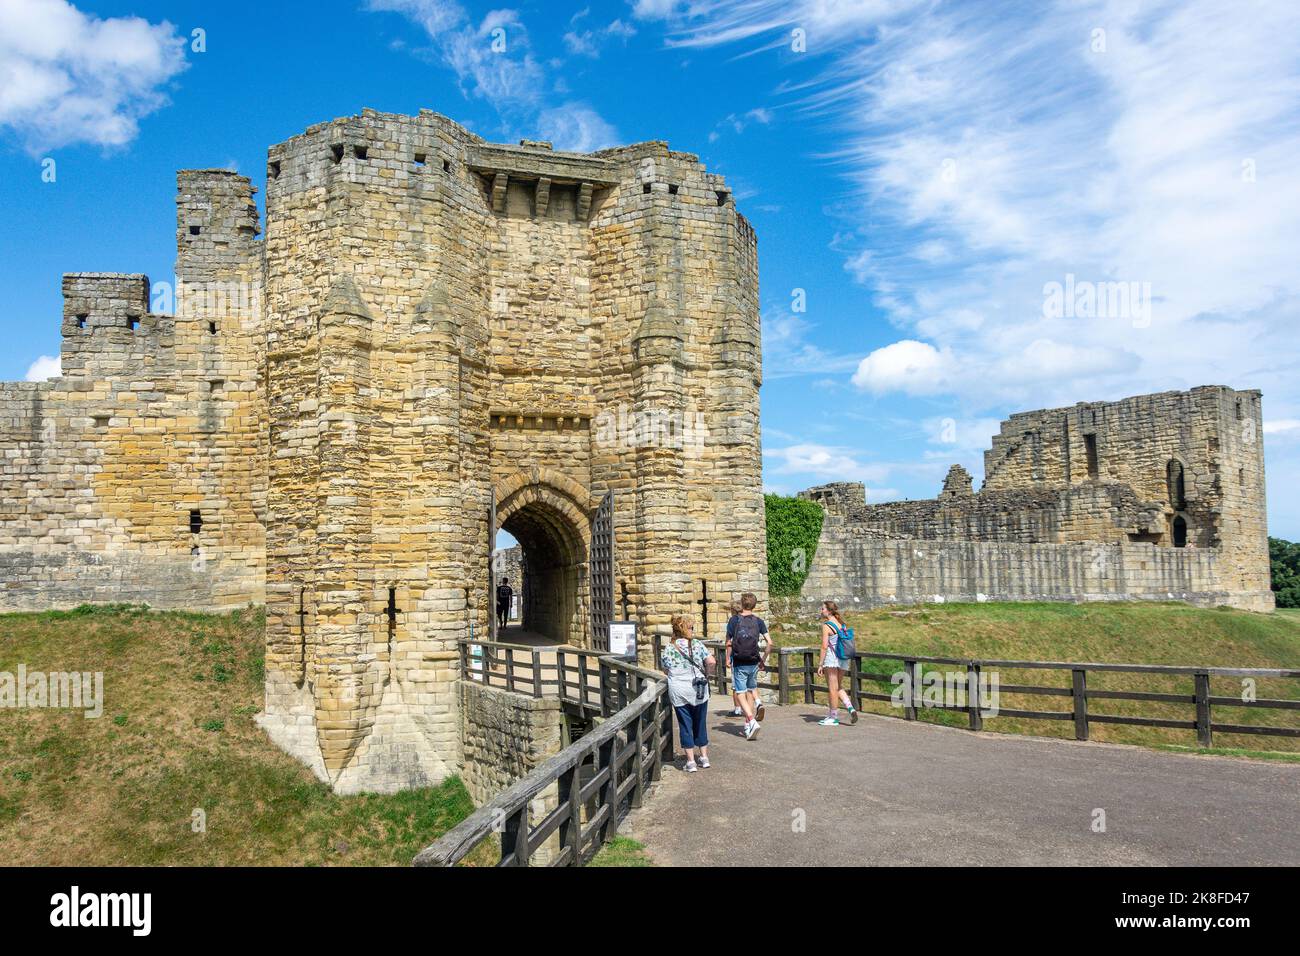 Ingresso al Castello di Warkworth del 12th secolo, Warkworth, Northumberland, Inghilterra, Regno Unito Foto Stock